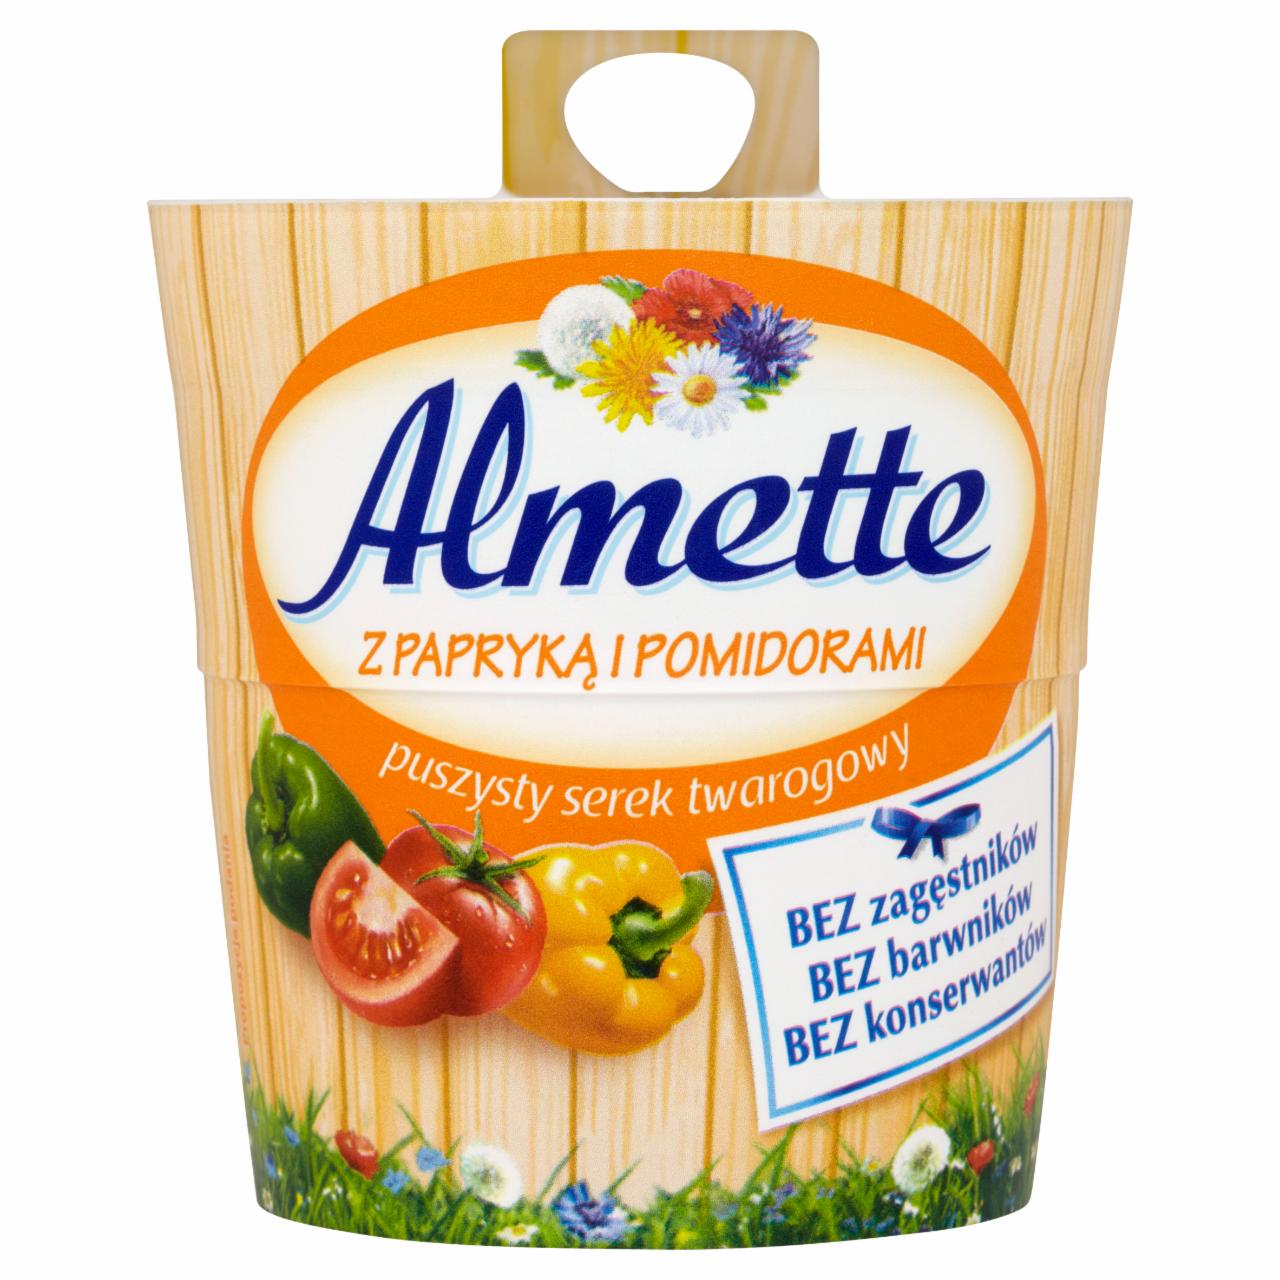 Zdjęcia - Almette z papryką i pomidorami puszysty serek twarogowy 150 g